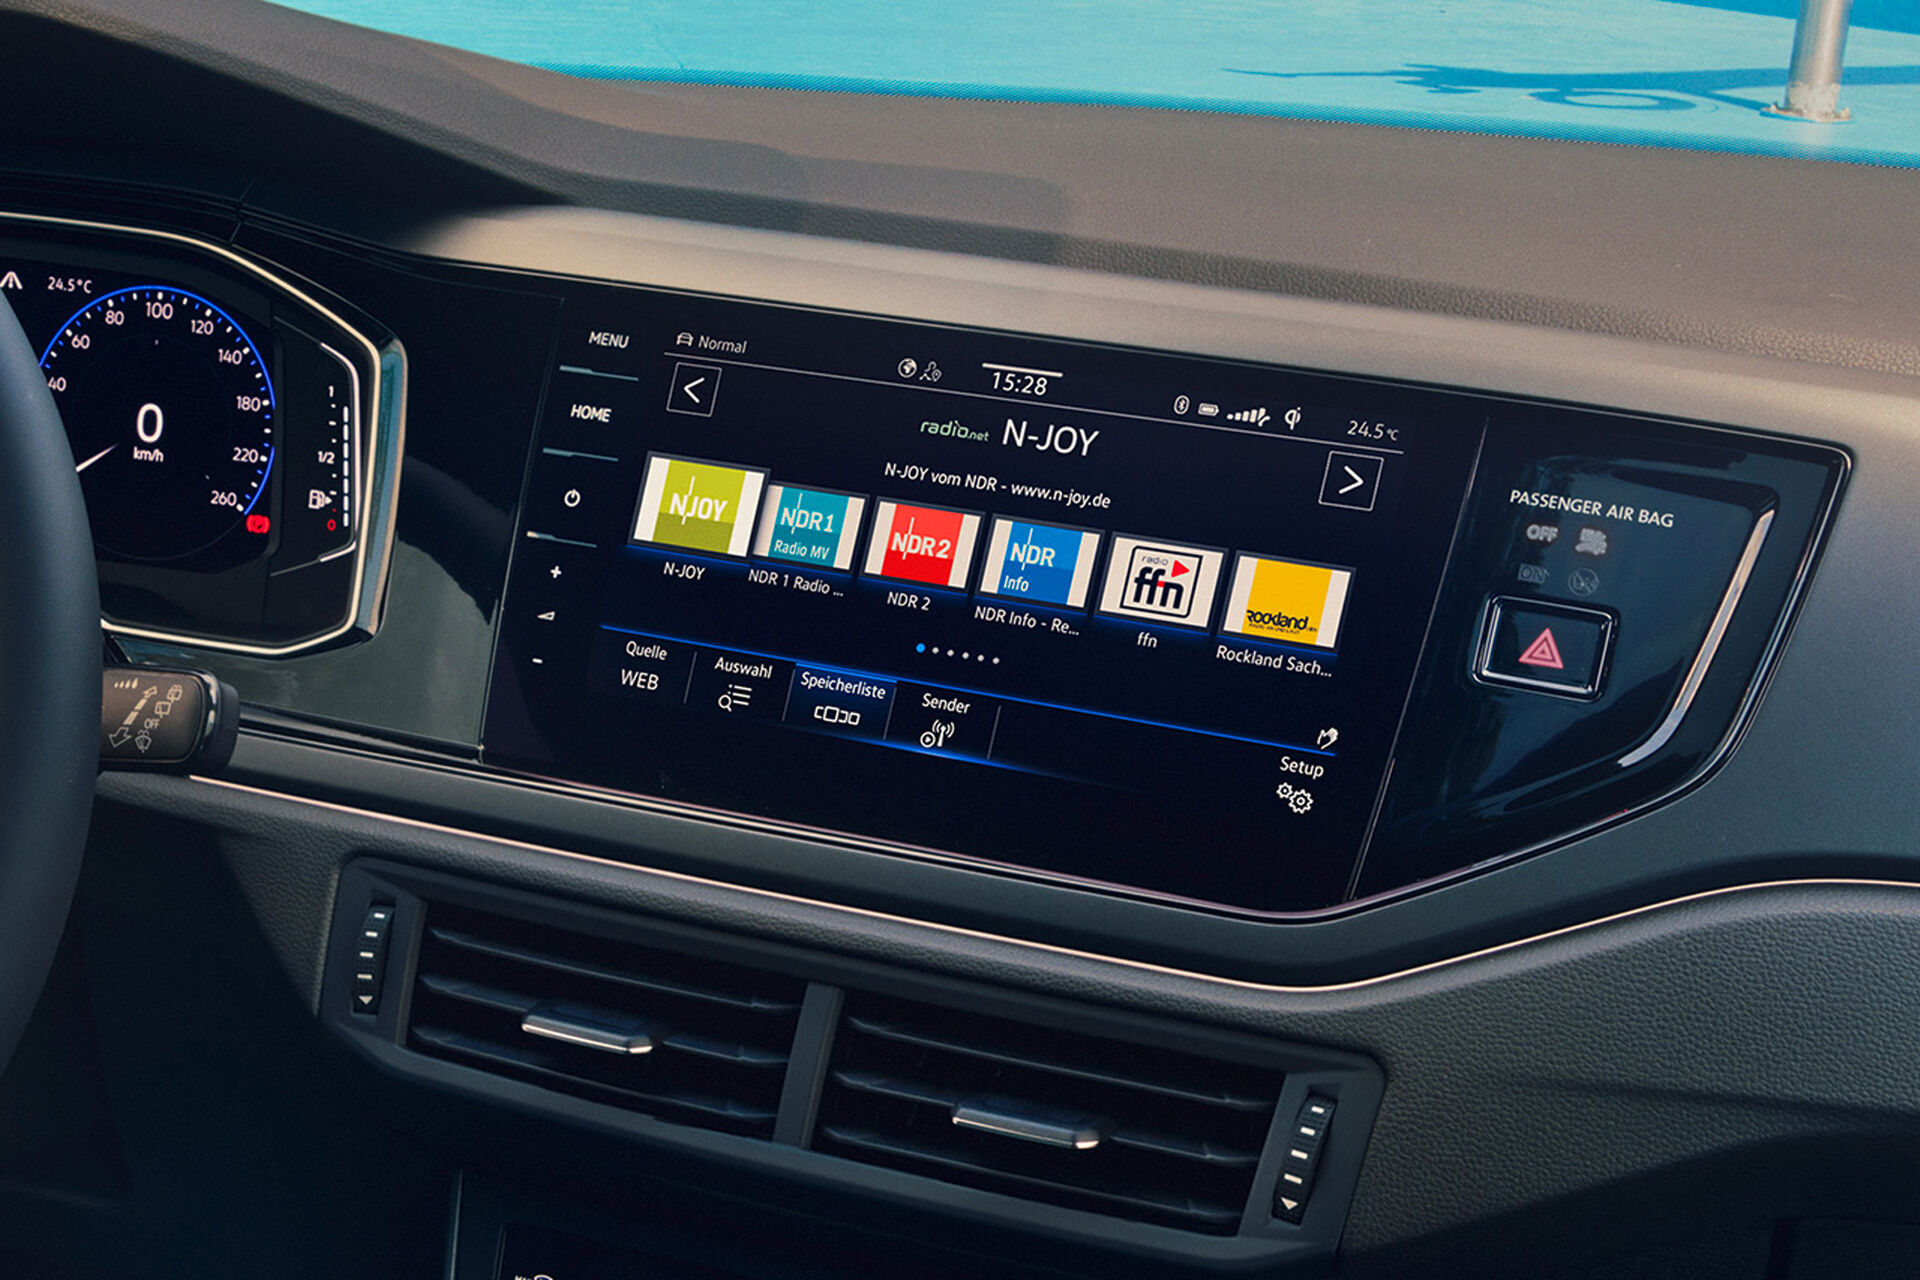 Vista de pormenor do ecrã com rádio web no interior do VW Polo. Visualiza-se uma seleção de emissoras de rádio.